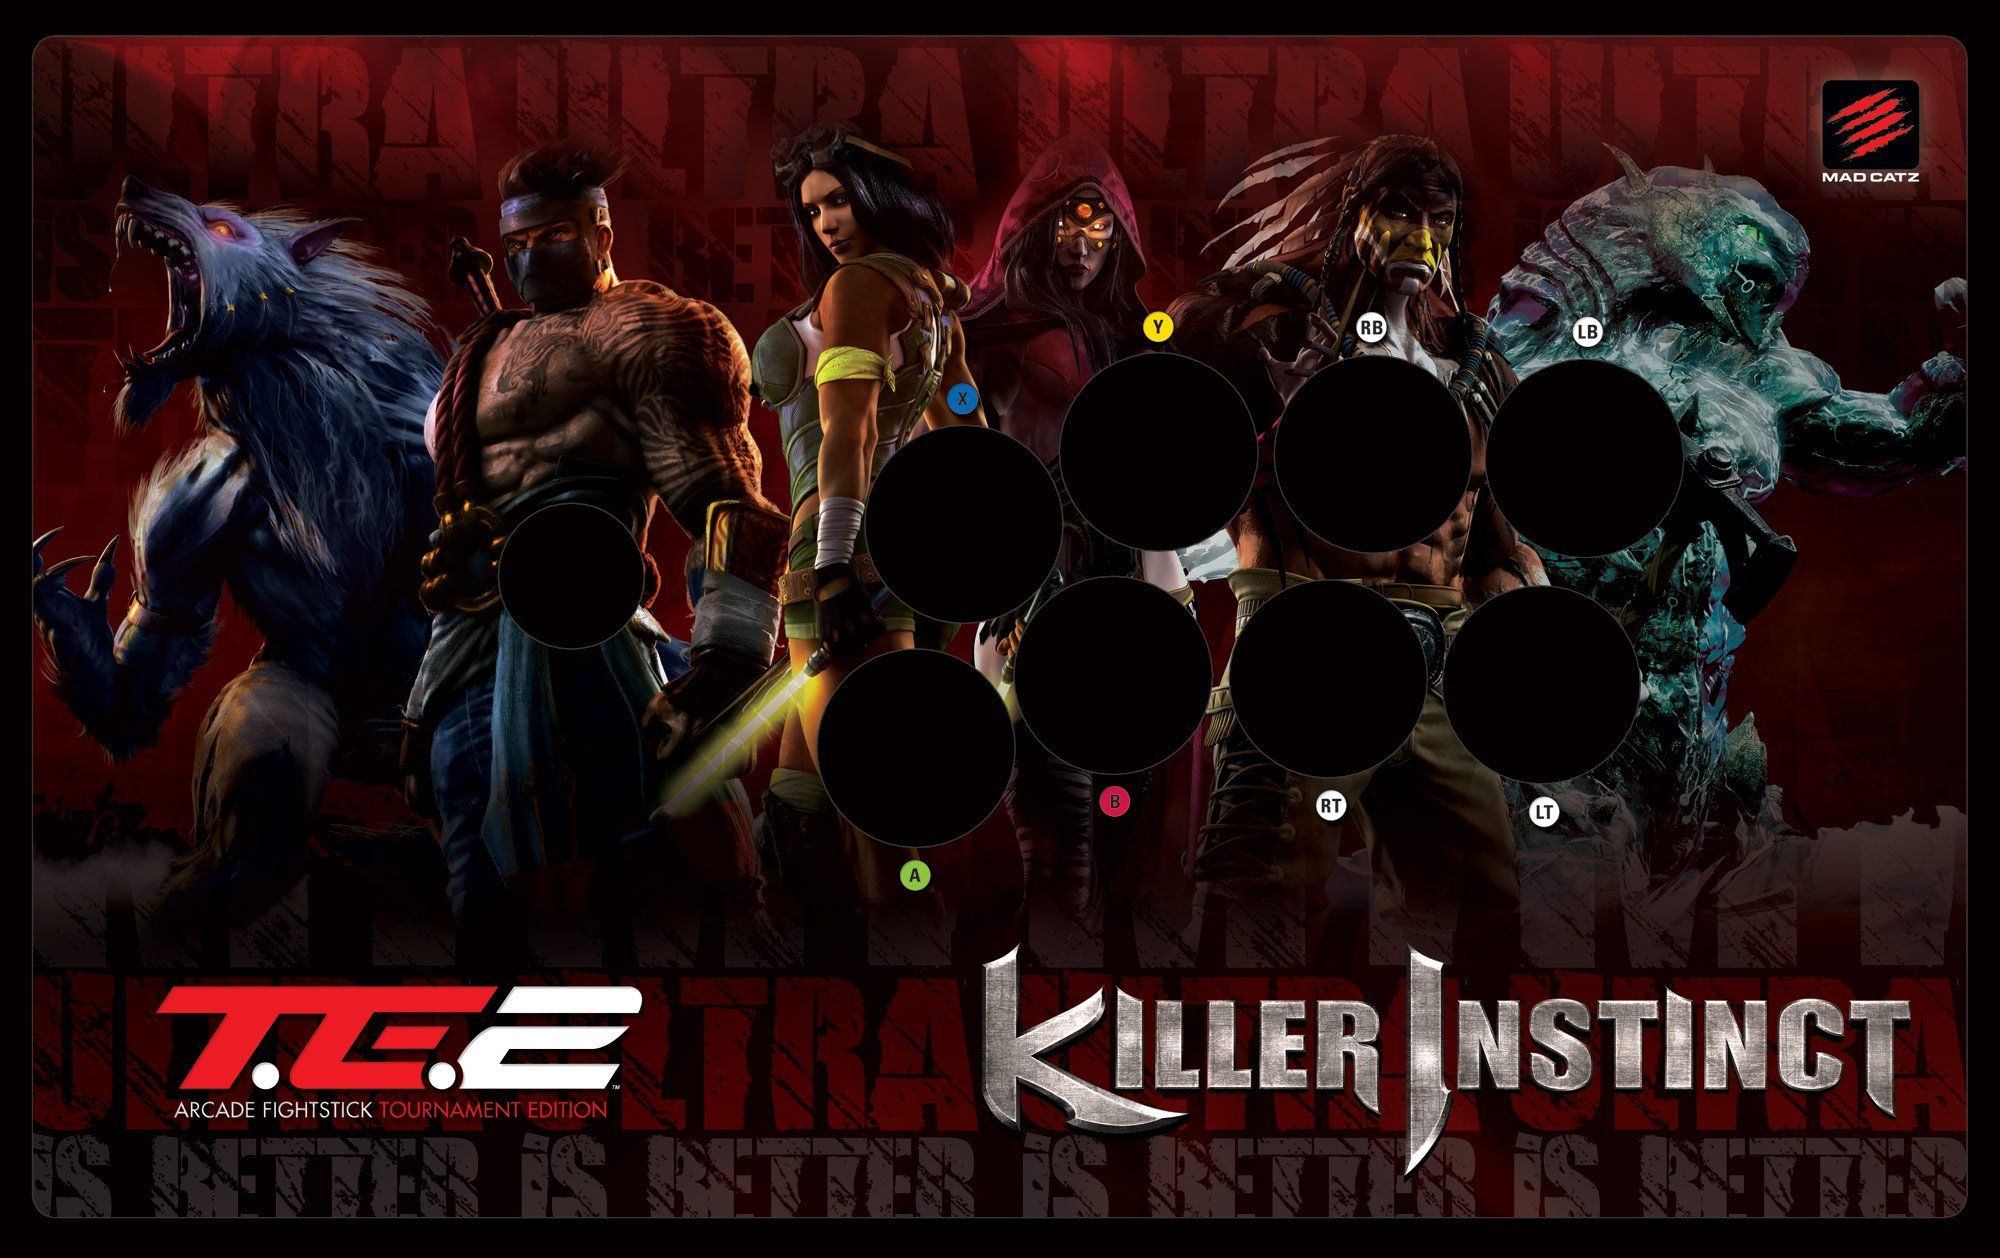 KILLER INSTINCT fighting fantasy game game 114 wallpaper